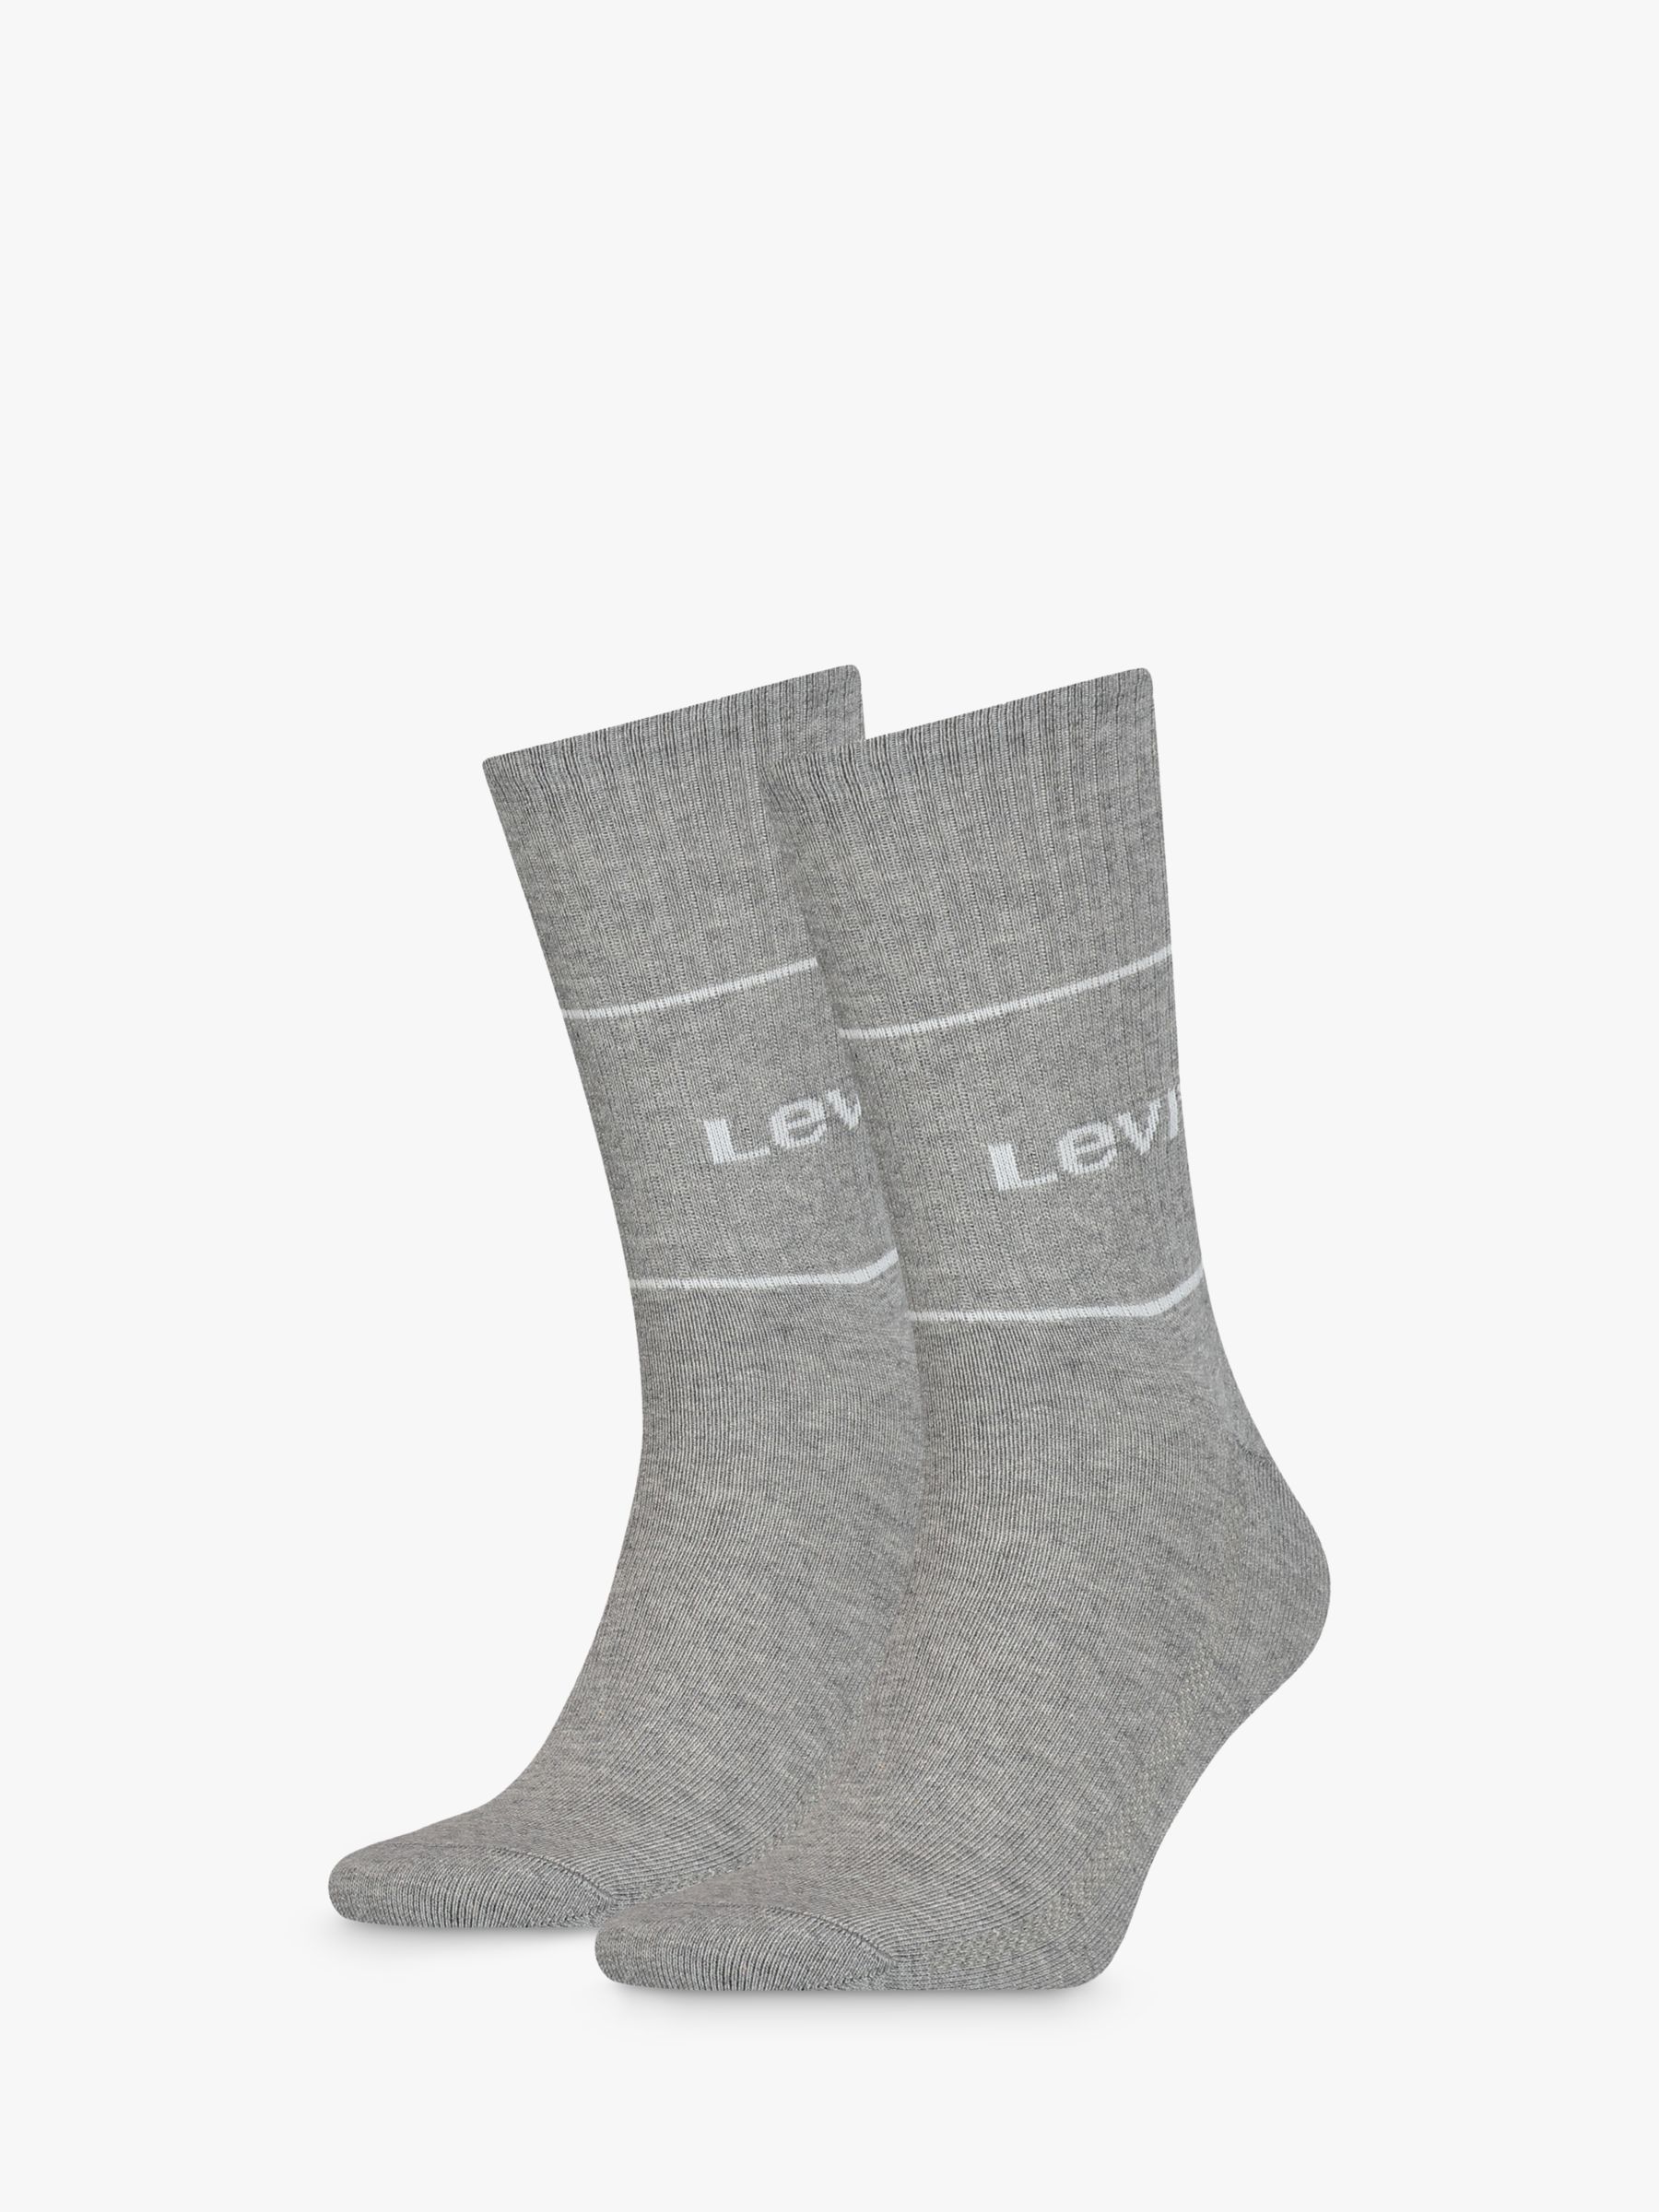 Levi's Regular Cut Logo Socks, Pack of 2